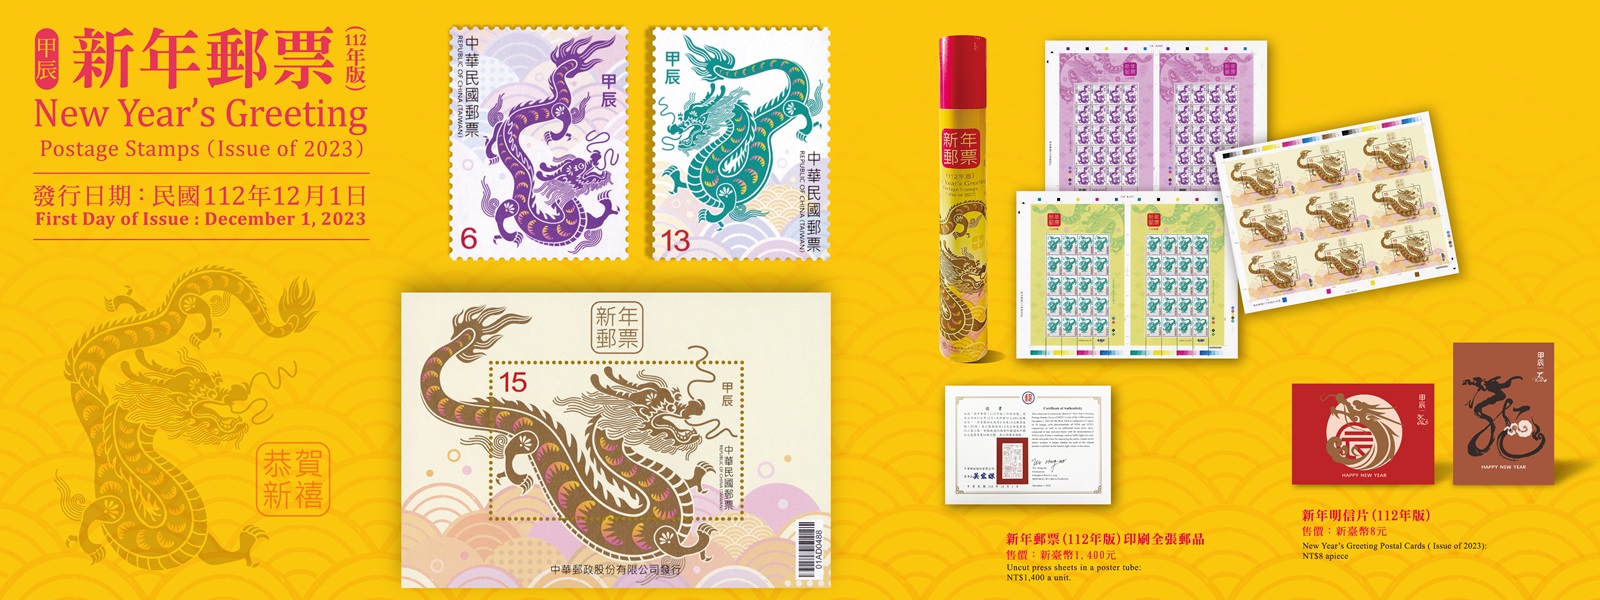 為迎接新年來臨，本公司續發行「新年郵票(112年版)」1套2枚及小全張1張。本套郵票圖案以「祥龍獻瑞賀新歲」為設計概念。